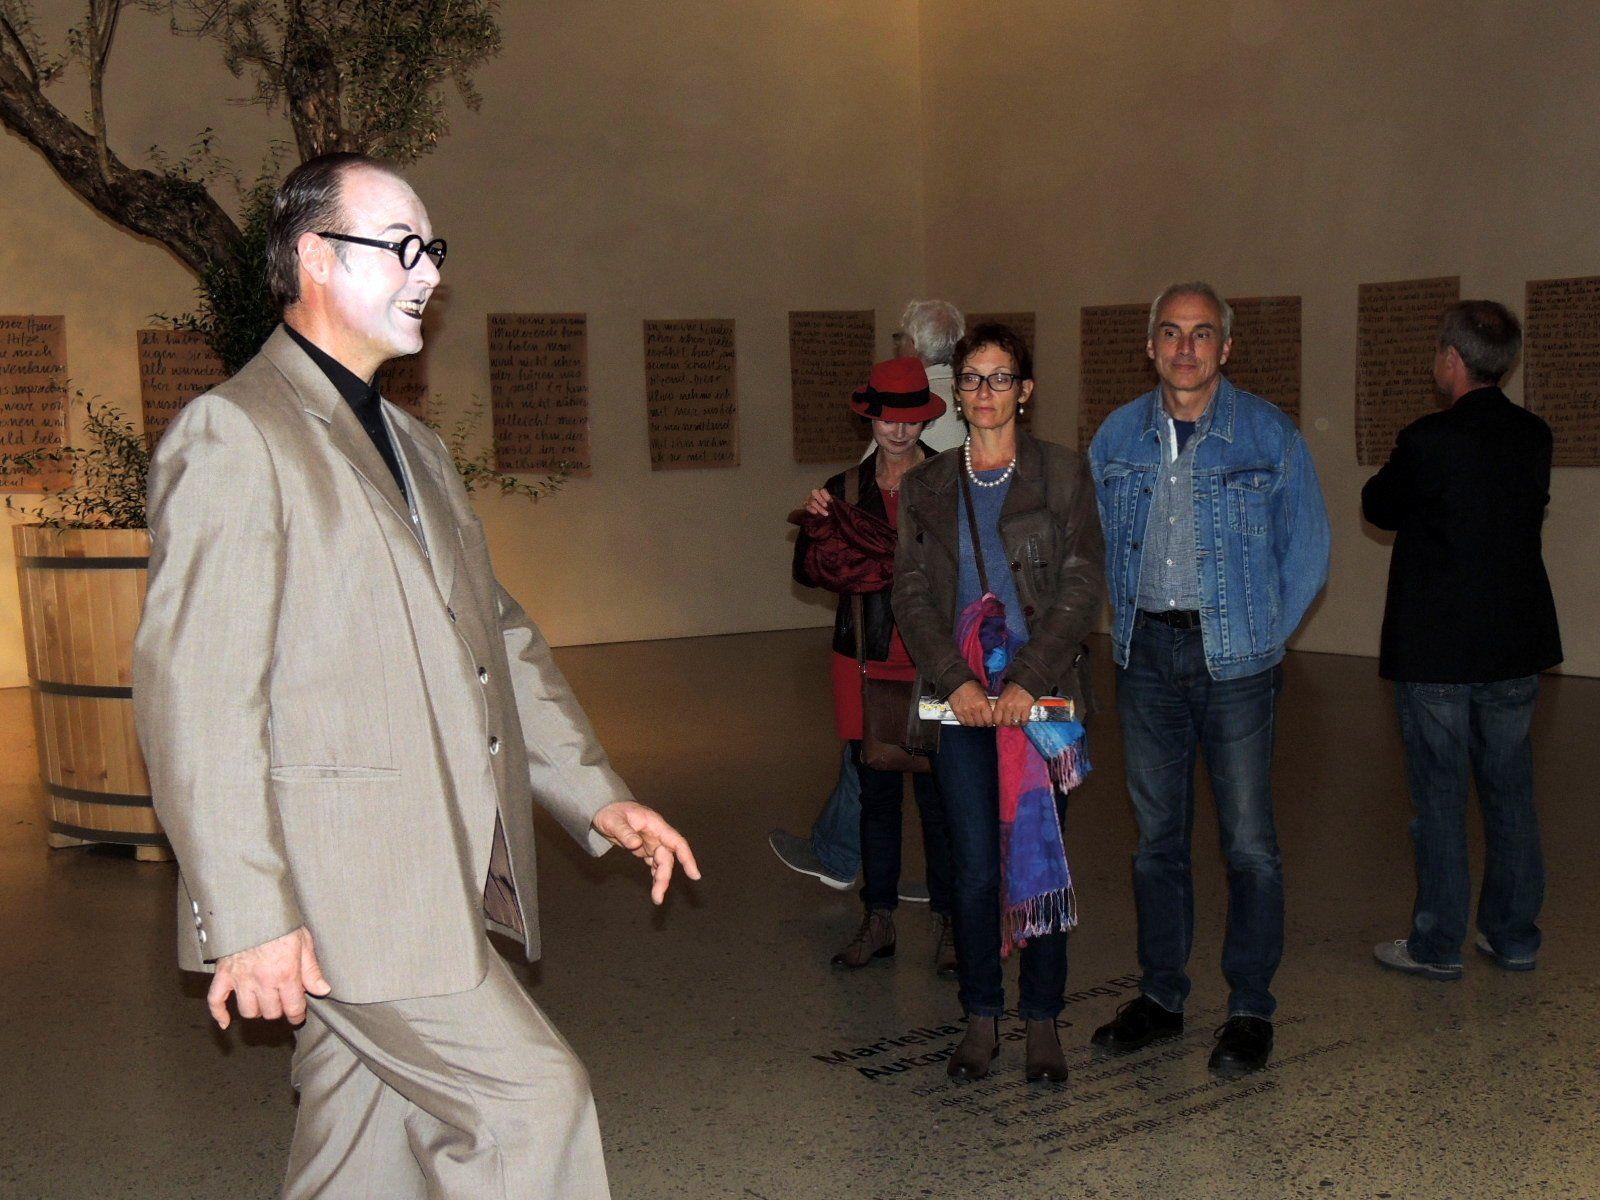 Pantomime Thiemo Dalpra überraschte die BesucherInnen beim Museumsbesuch